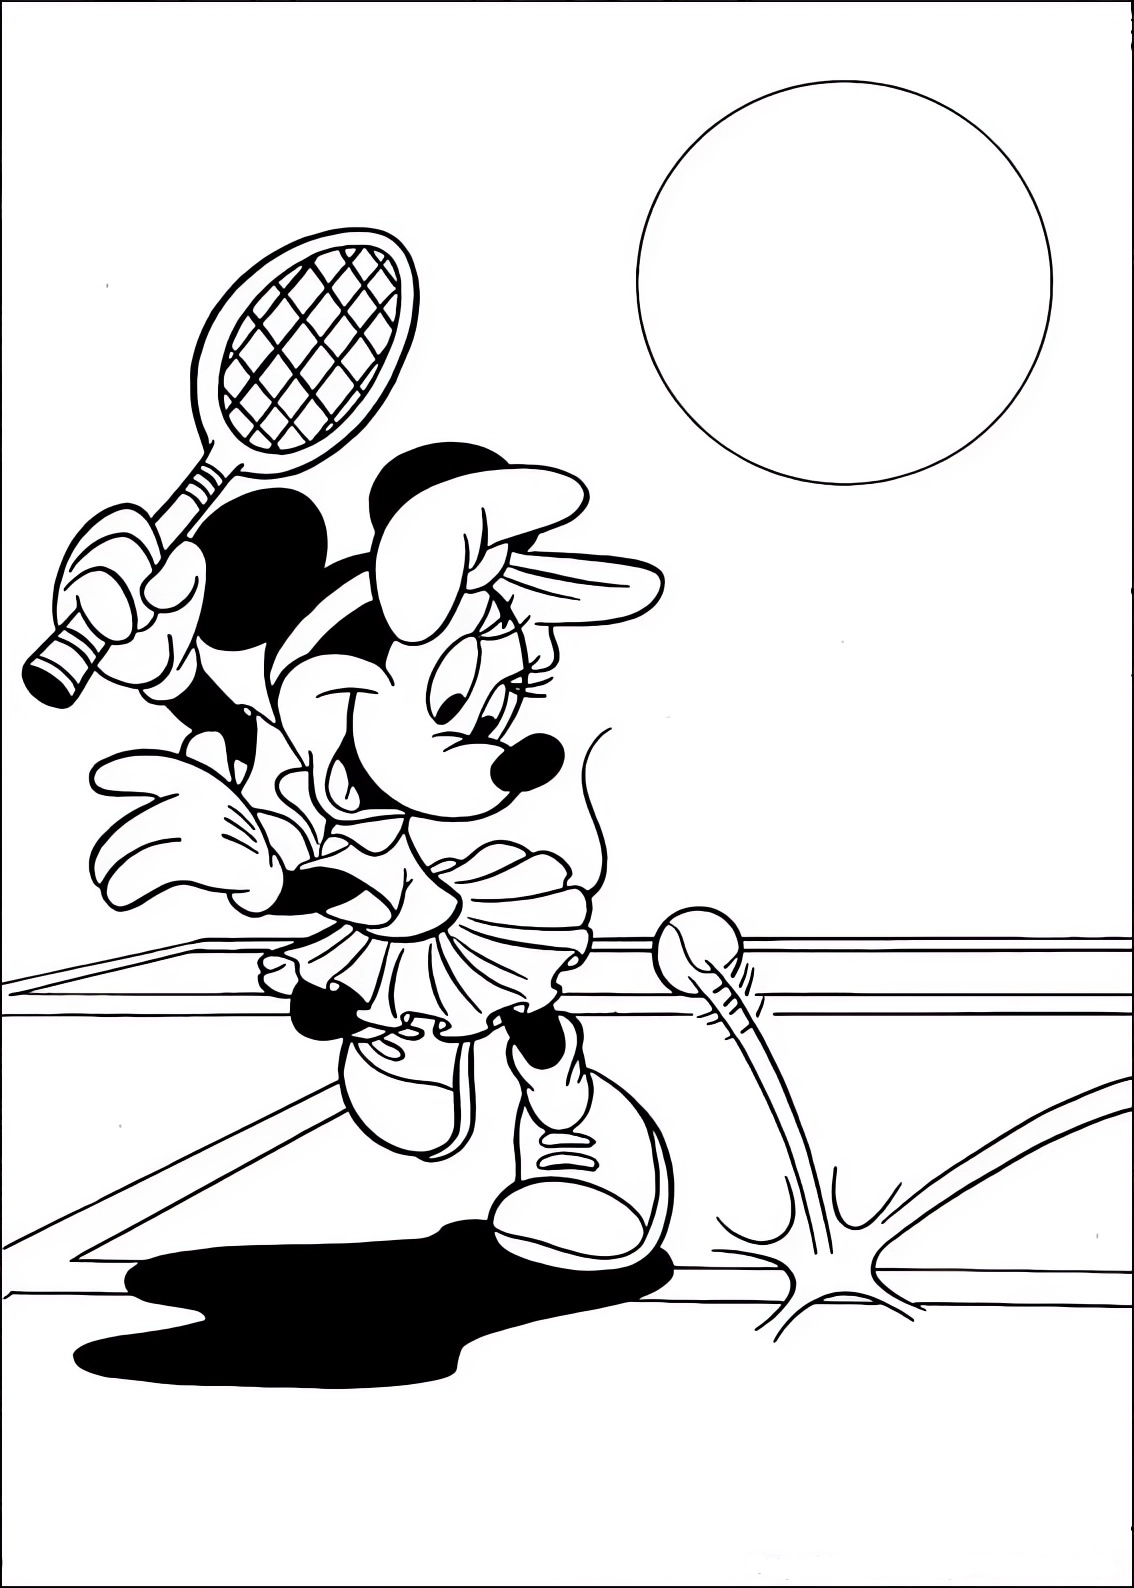 Disegno da colorare di Minnie che gioca a tennis  